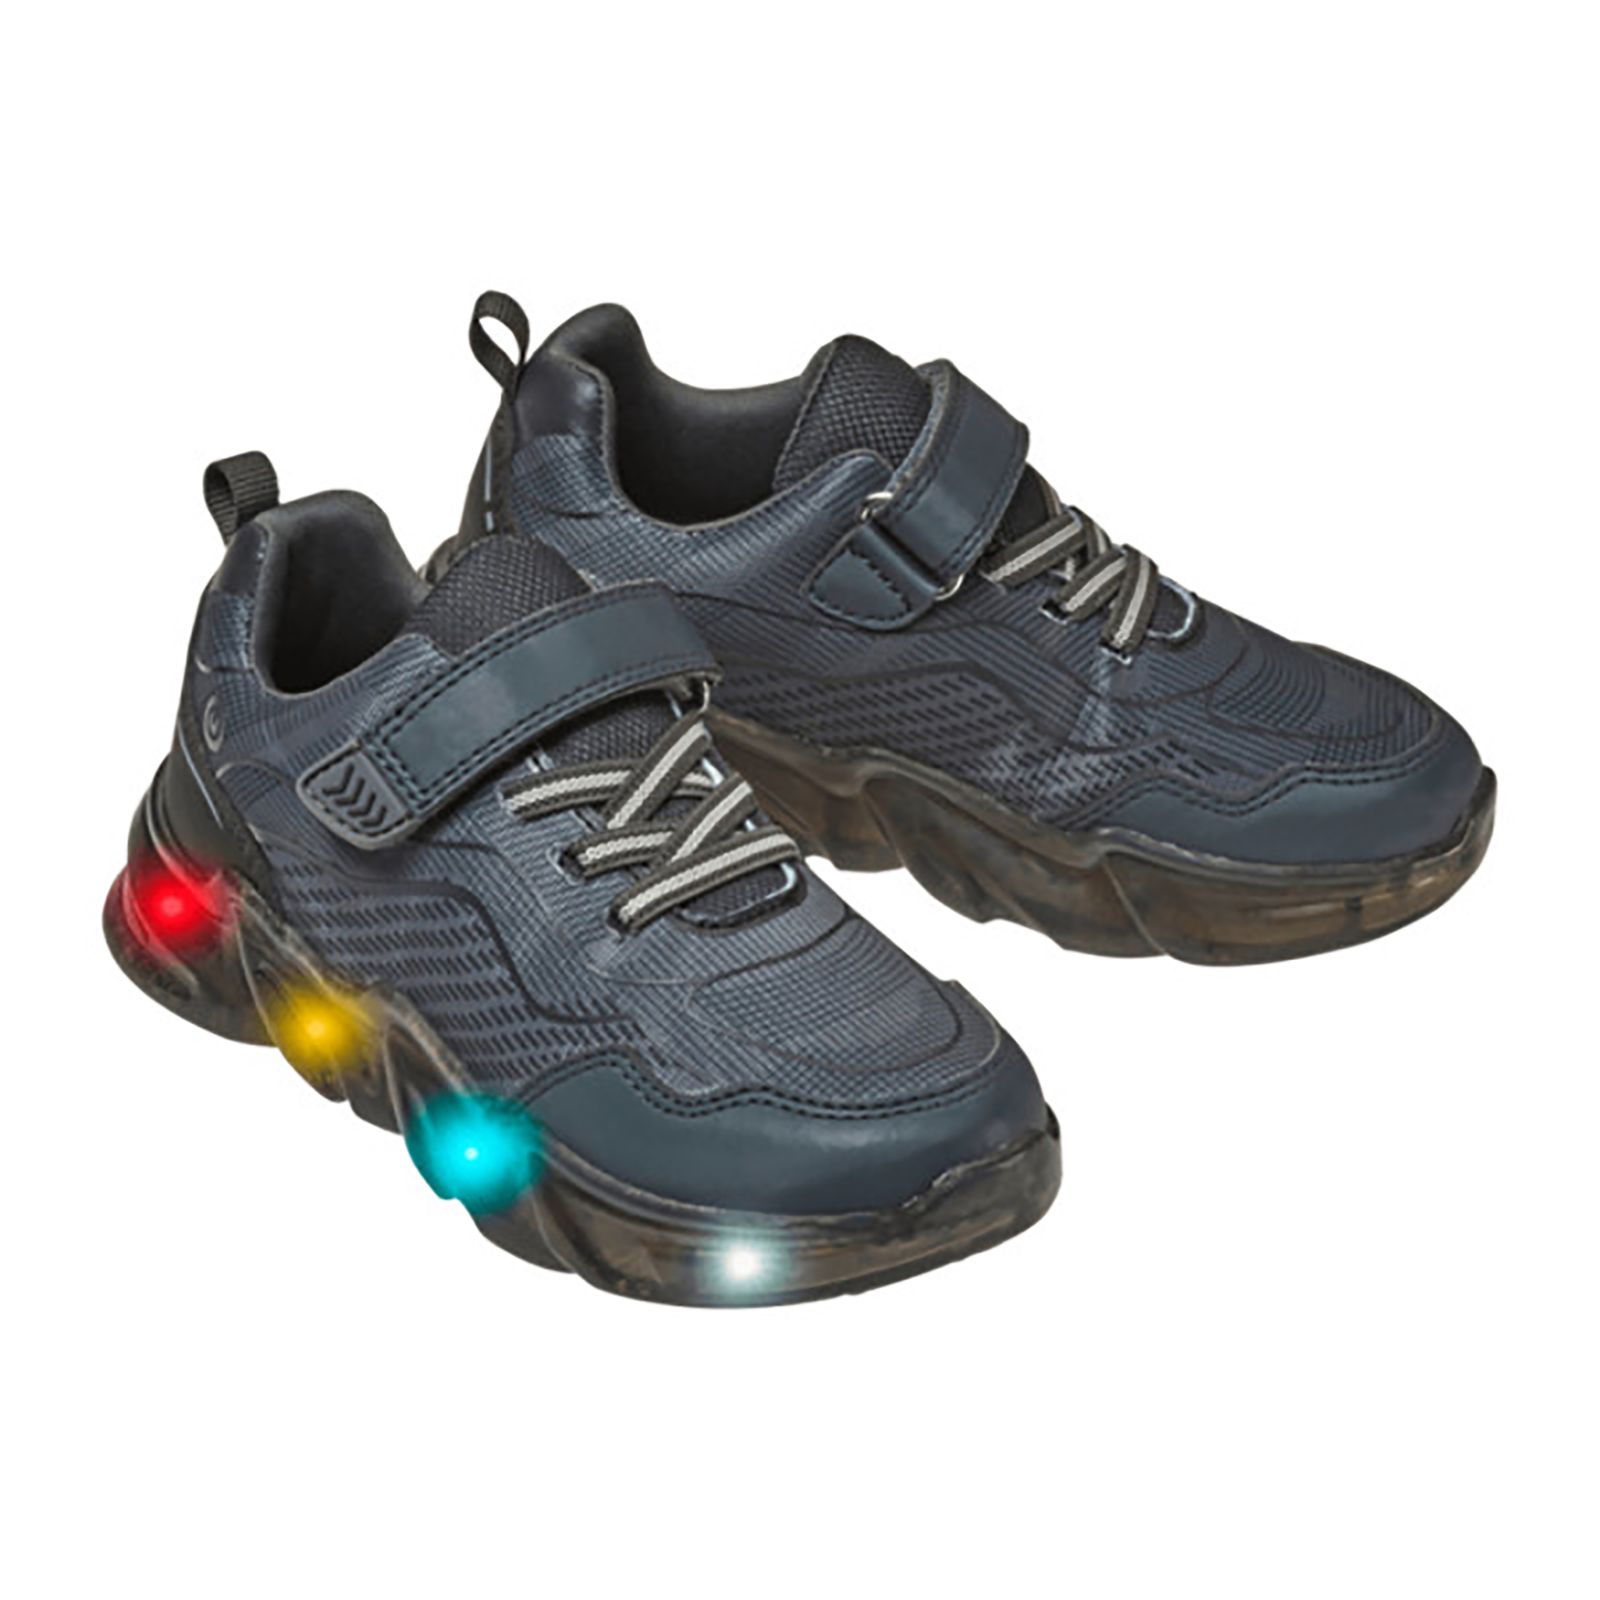  کفش مخصوص پیاده روی والک ایکس مدل چراغدار -  - 6